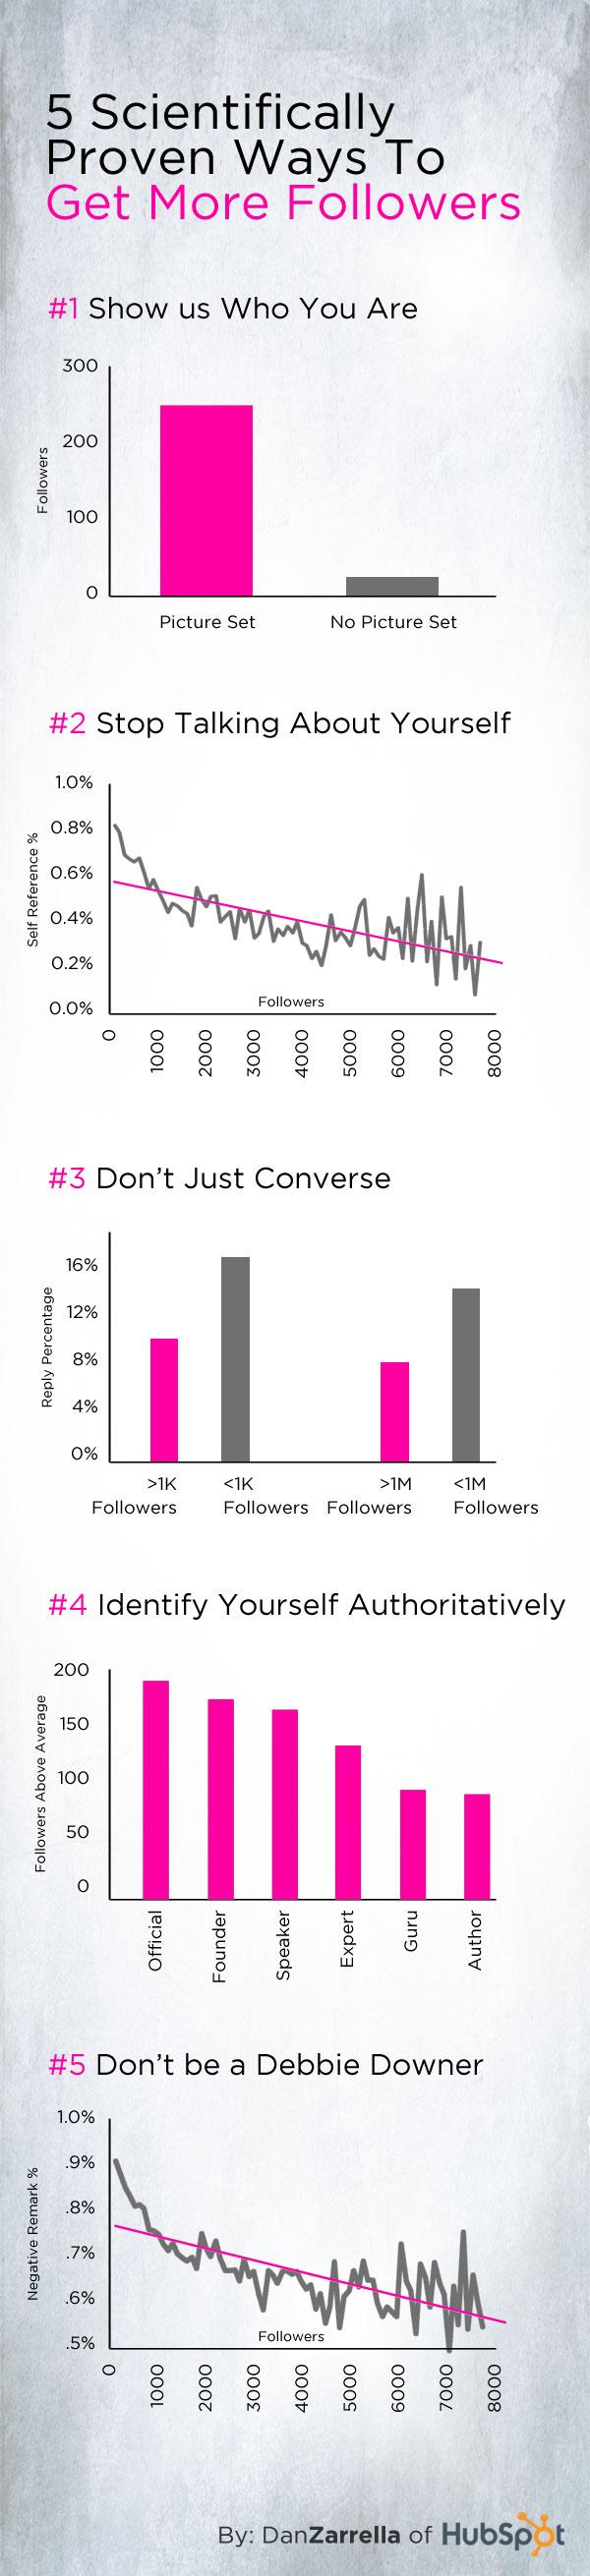 Twitter : 5 manières scientifiquement prouvées de gagner des followers